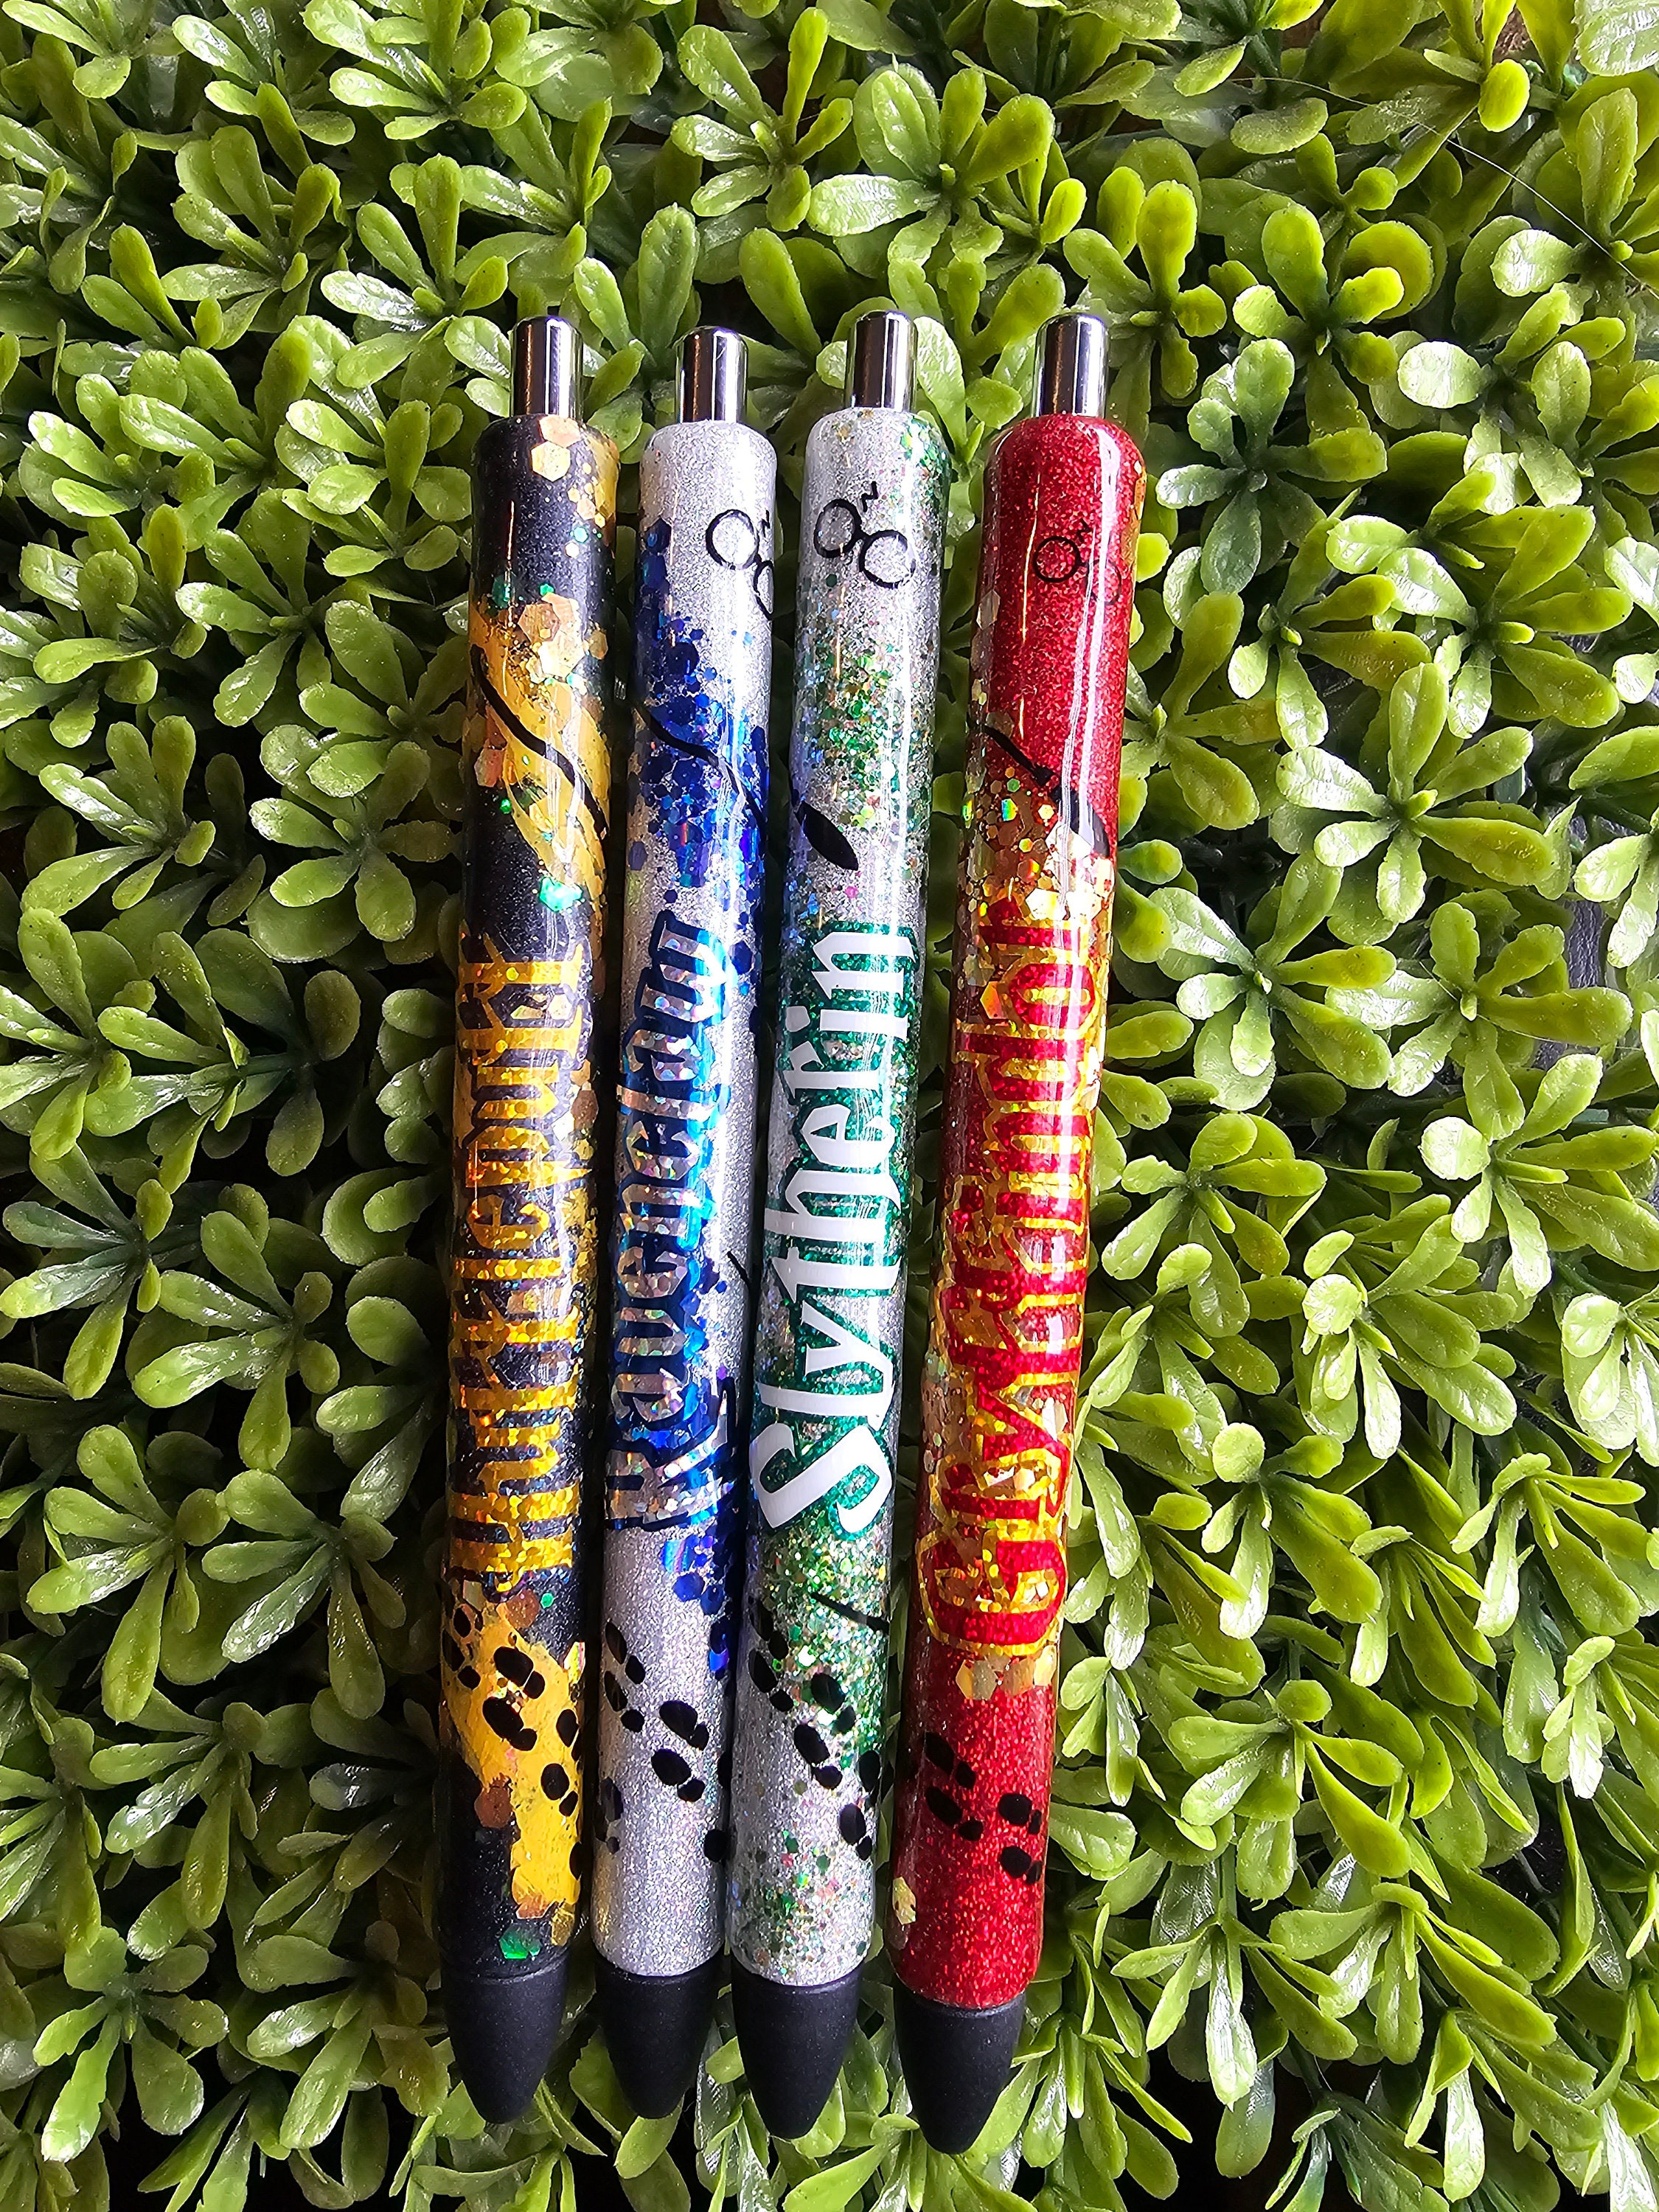 Gel Pen Sets pack of 4 Blue, Black, Red, Writing Pens for Bullet